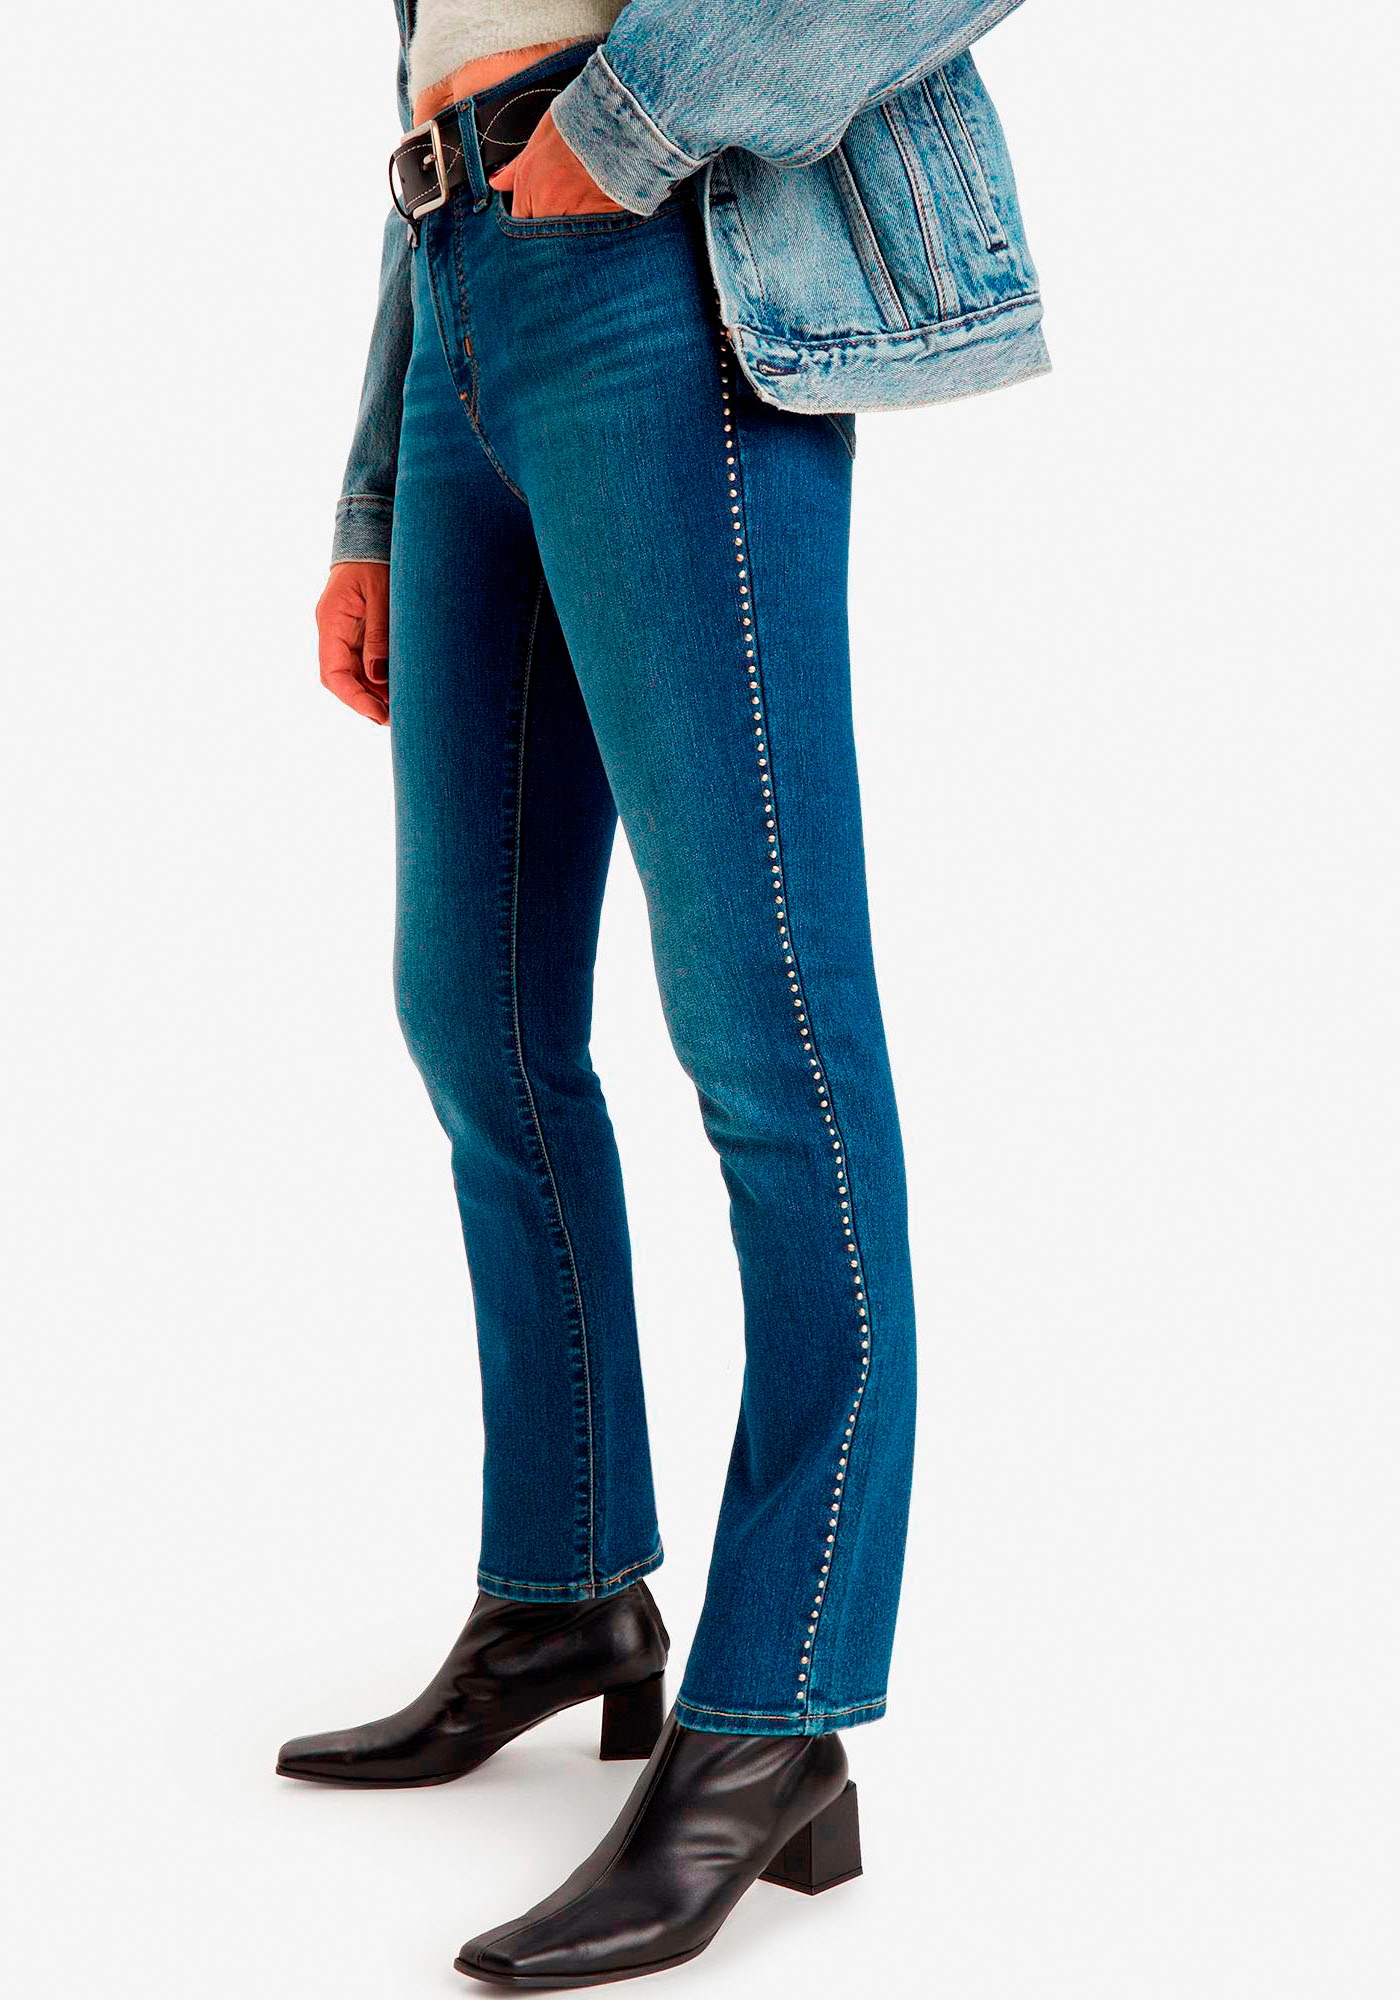 Calvin Klein Jeans Jerseykleid »LOGO ELASTIC MILANO LS DRESS« kaufen